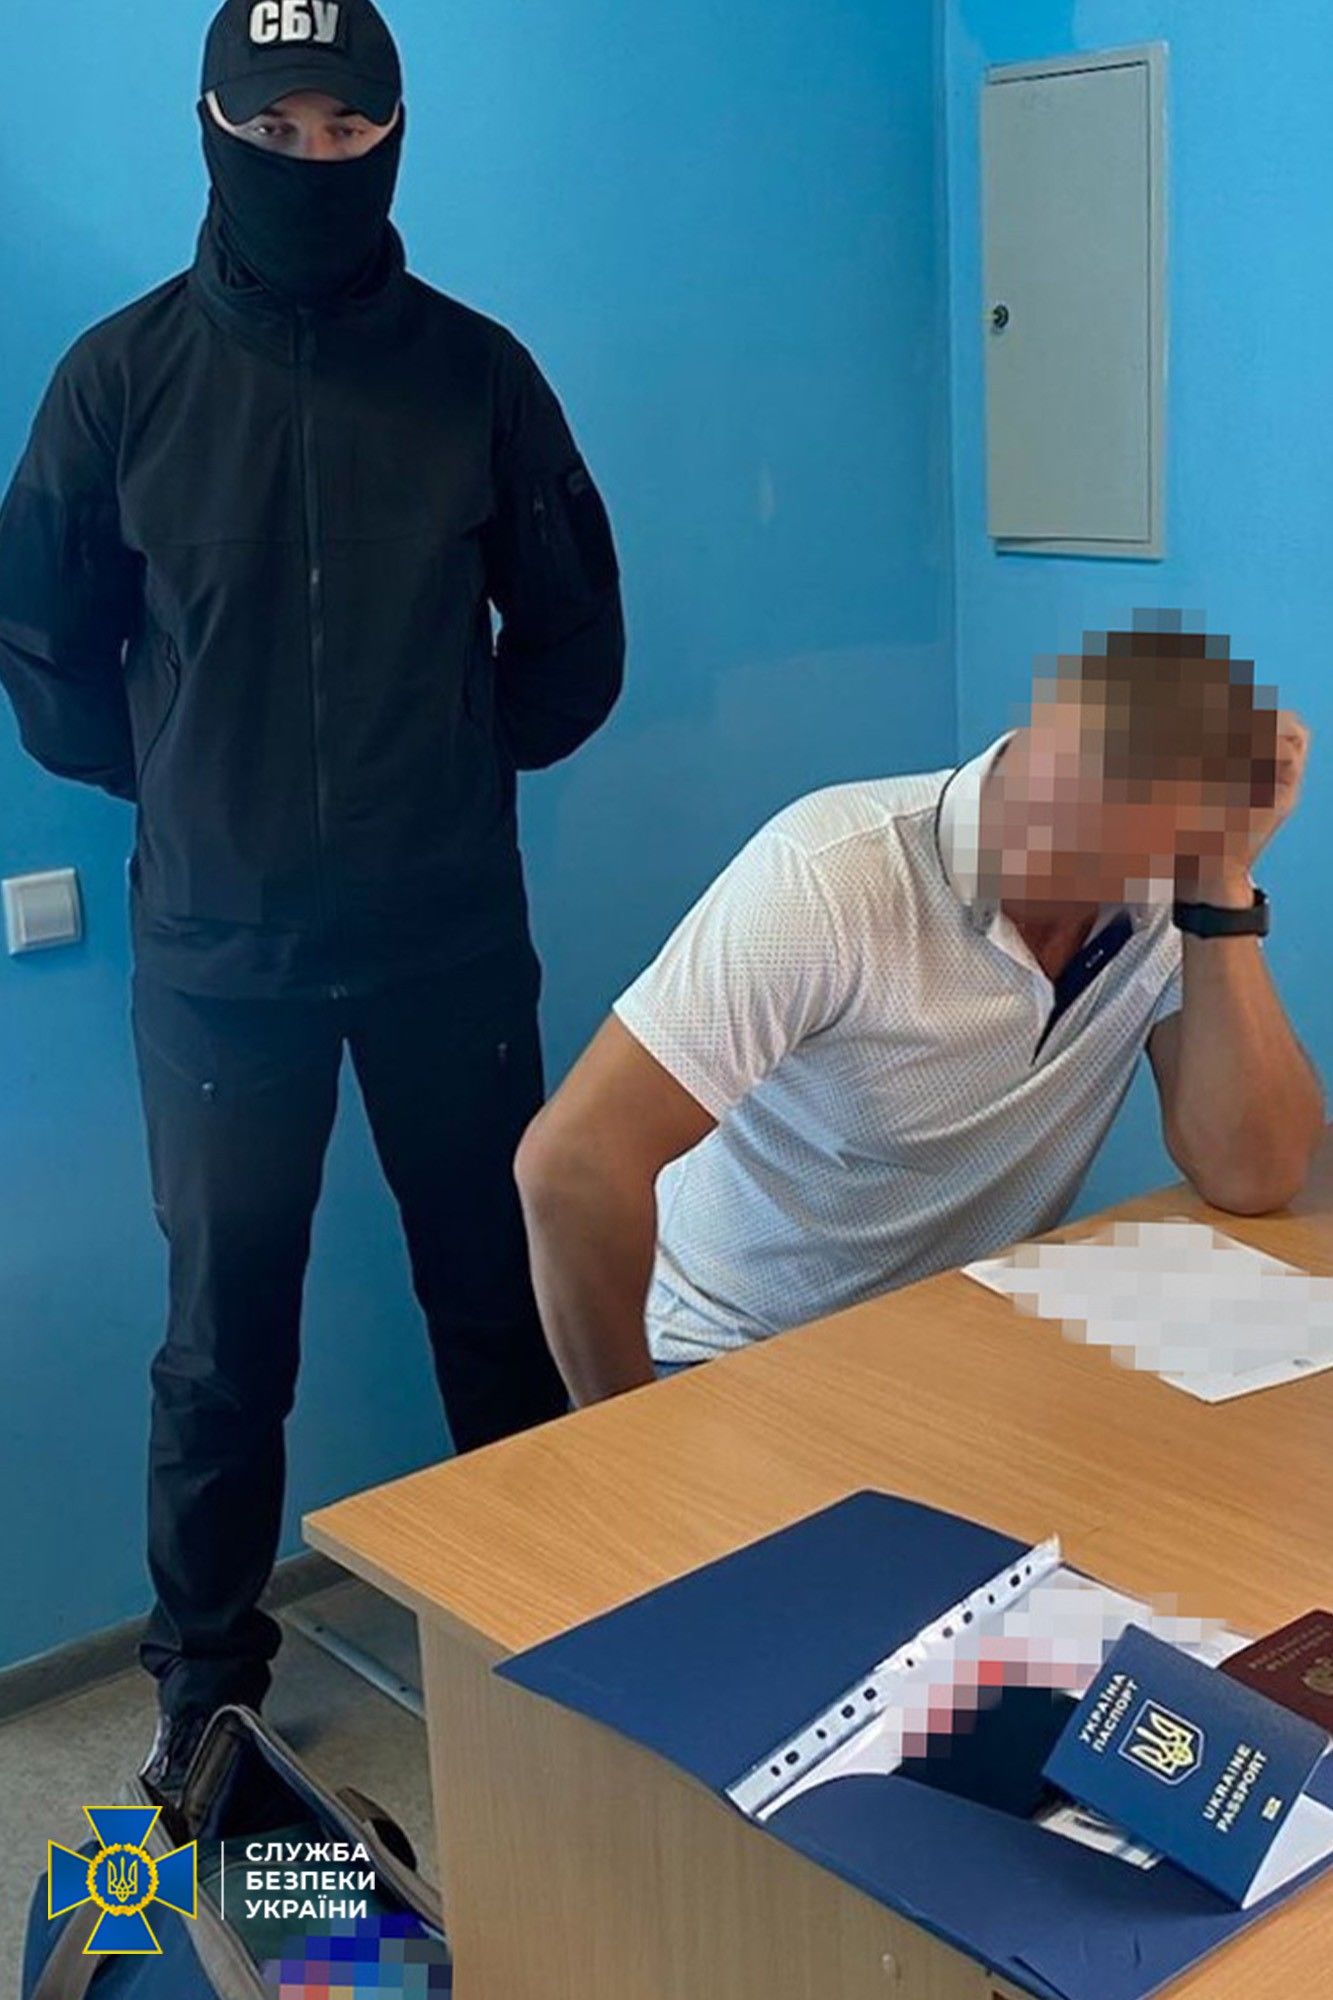 Контрразведчики СБУ задержали "замдиректора" аэропорта Симферополь, помогавшего захватывать Крым